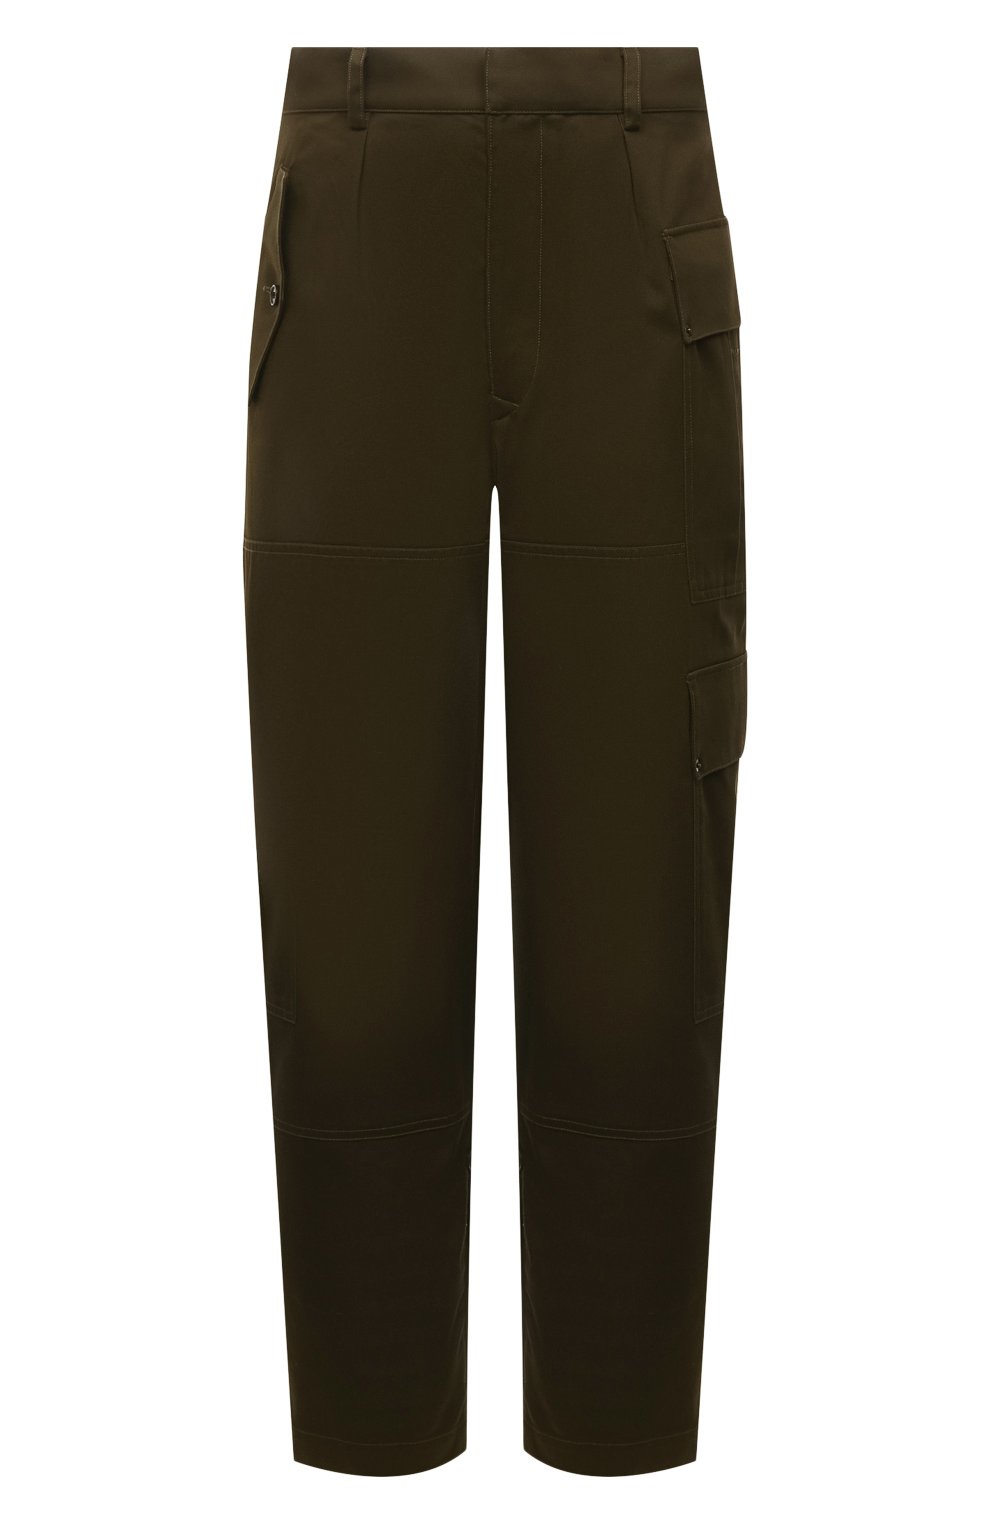 Мужские хлопковые брюки LOEWE хаки цвета, арт. H526Y04W39 | Фото 1 (Длина (брюки, джинсы): Стандартные; Случай: Повседневный; Стили: Милитари; Материал внешний: Хлопок)